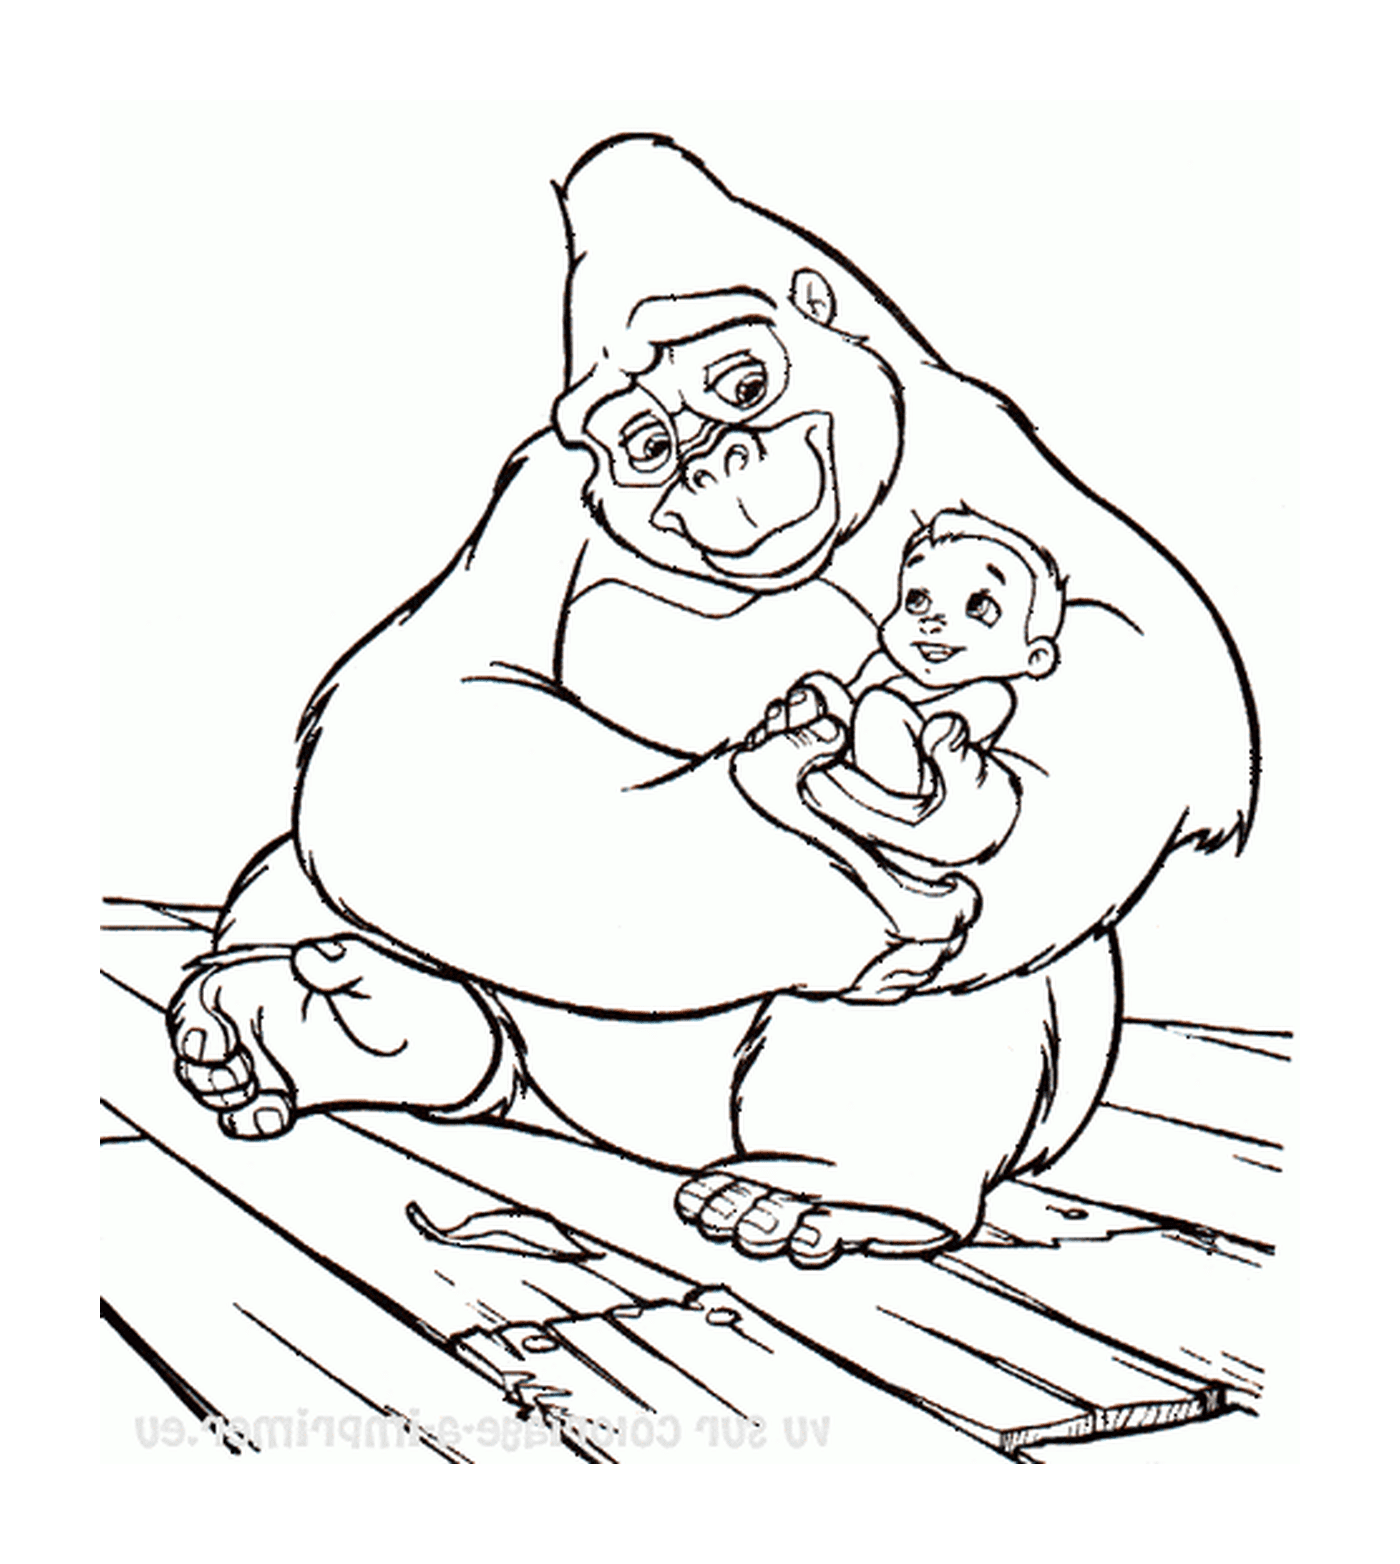  Gorila adulta sosteniendo a un bebé en sus brazos 